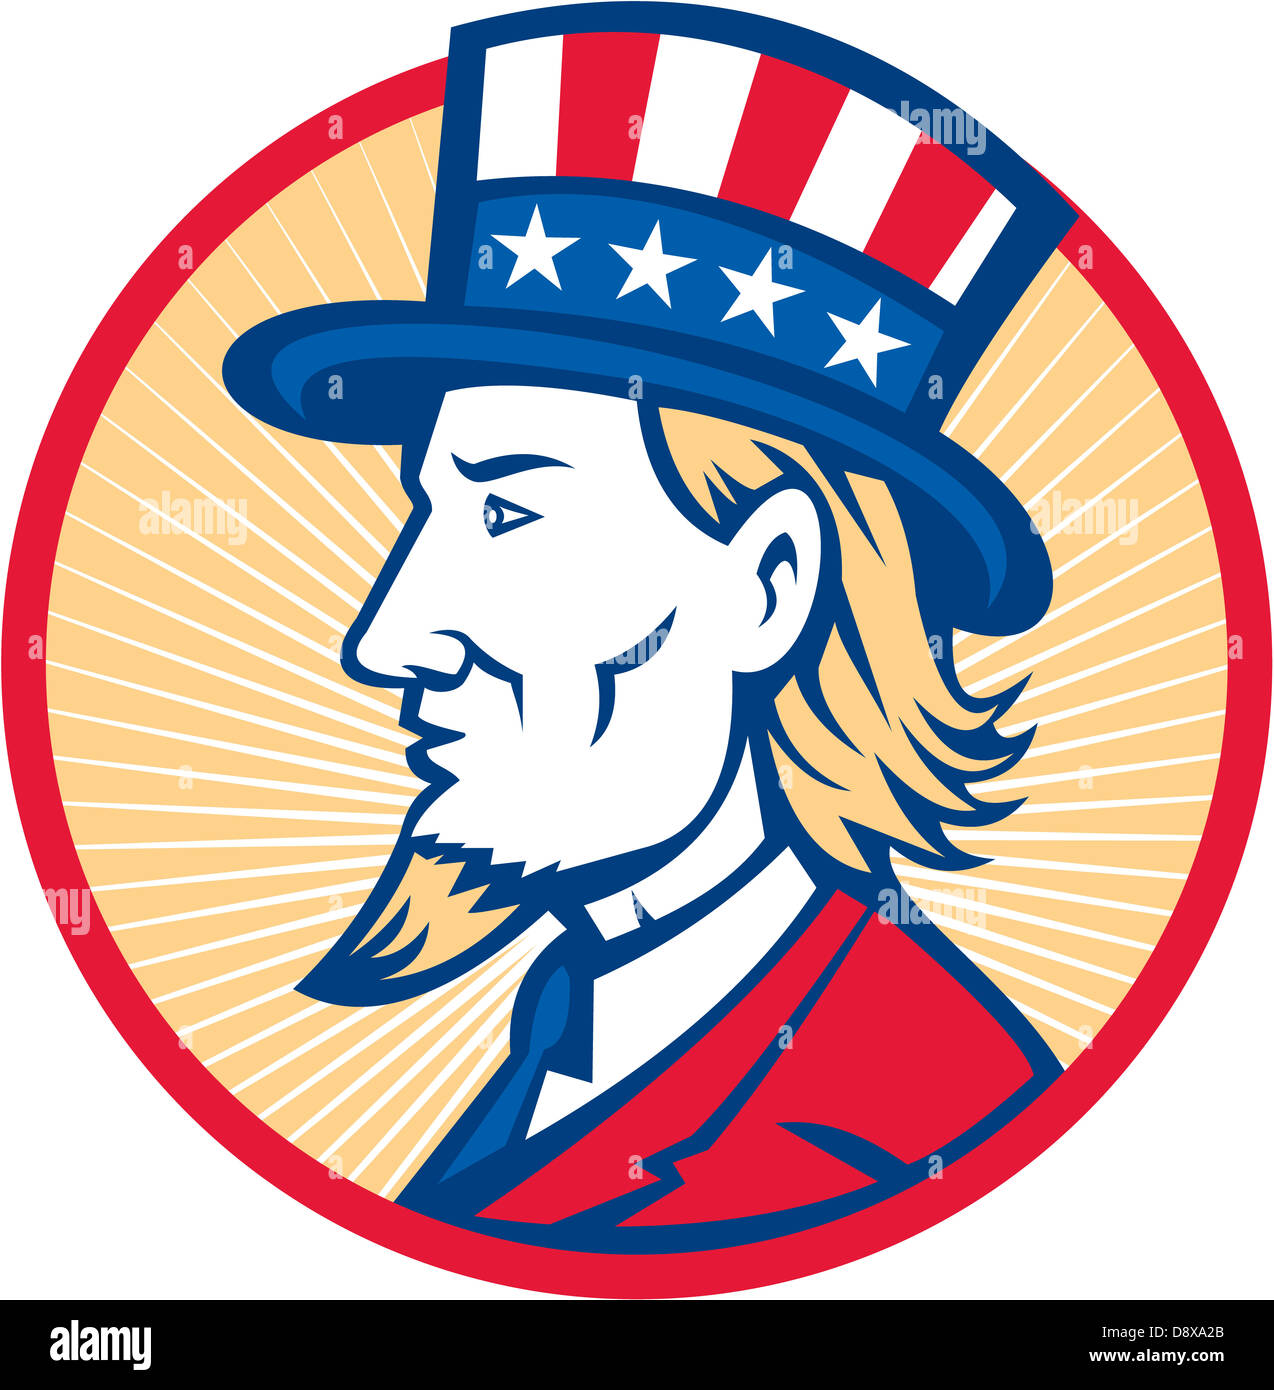 Abbildung von Uncle Sam Hut mit Sternen und Streifen amerikanische Flagge von Seite im inneren Kreis betrachtet. Stockfoto